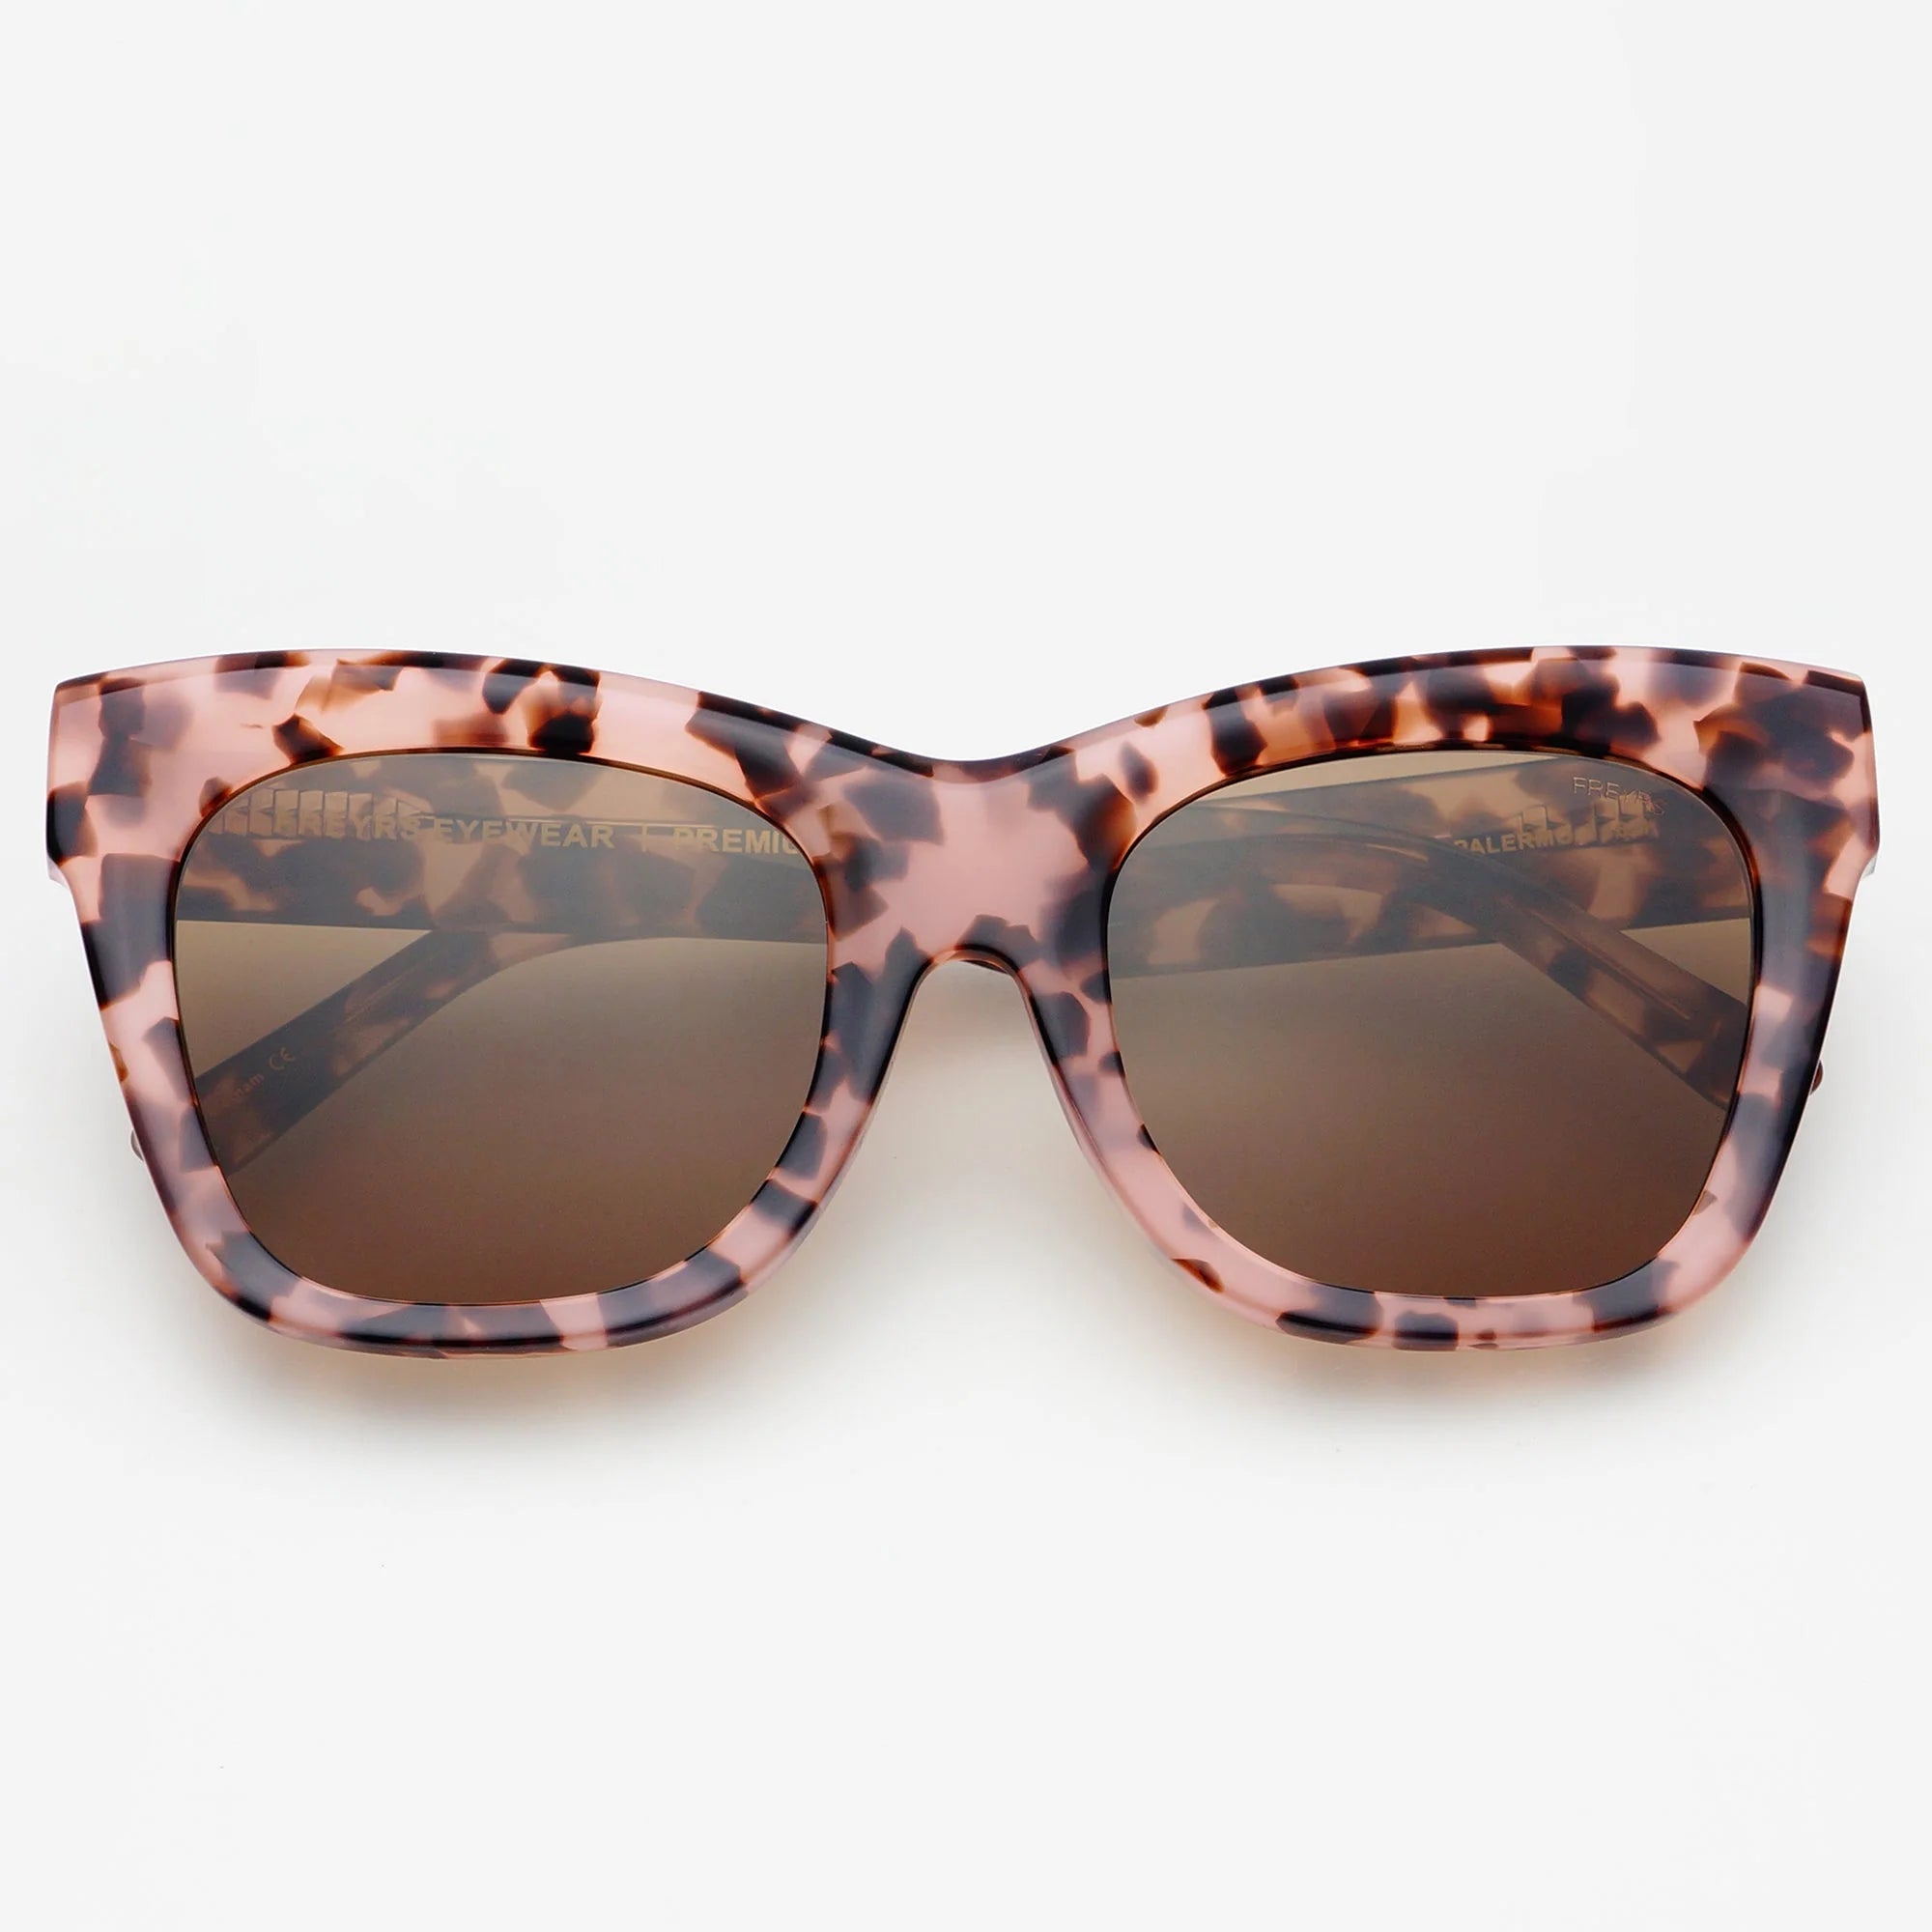 Palermo Sunglasses